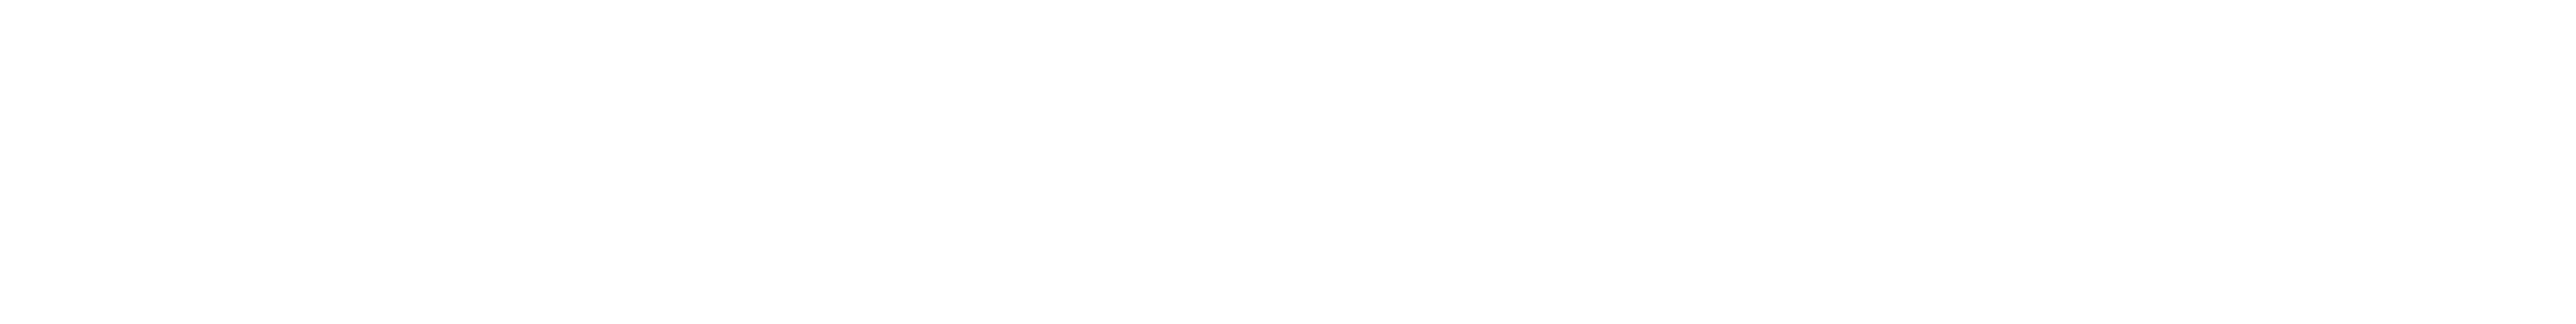 Santa Clara Senior Medical Group logo